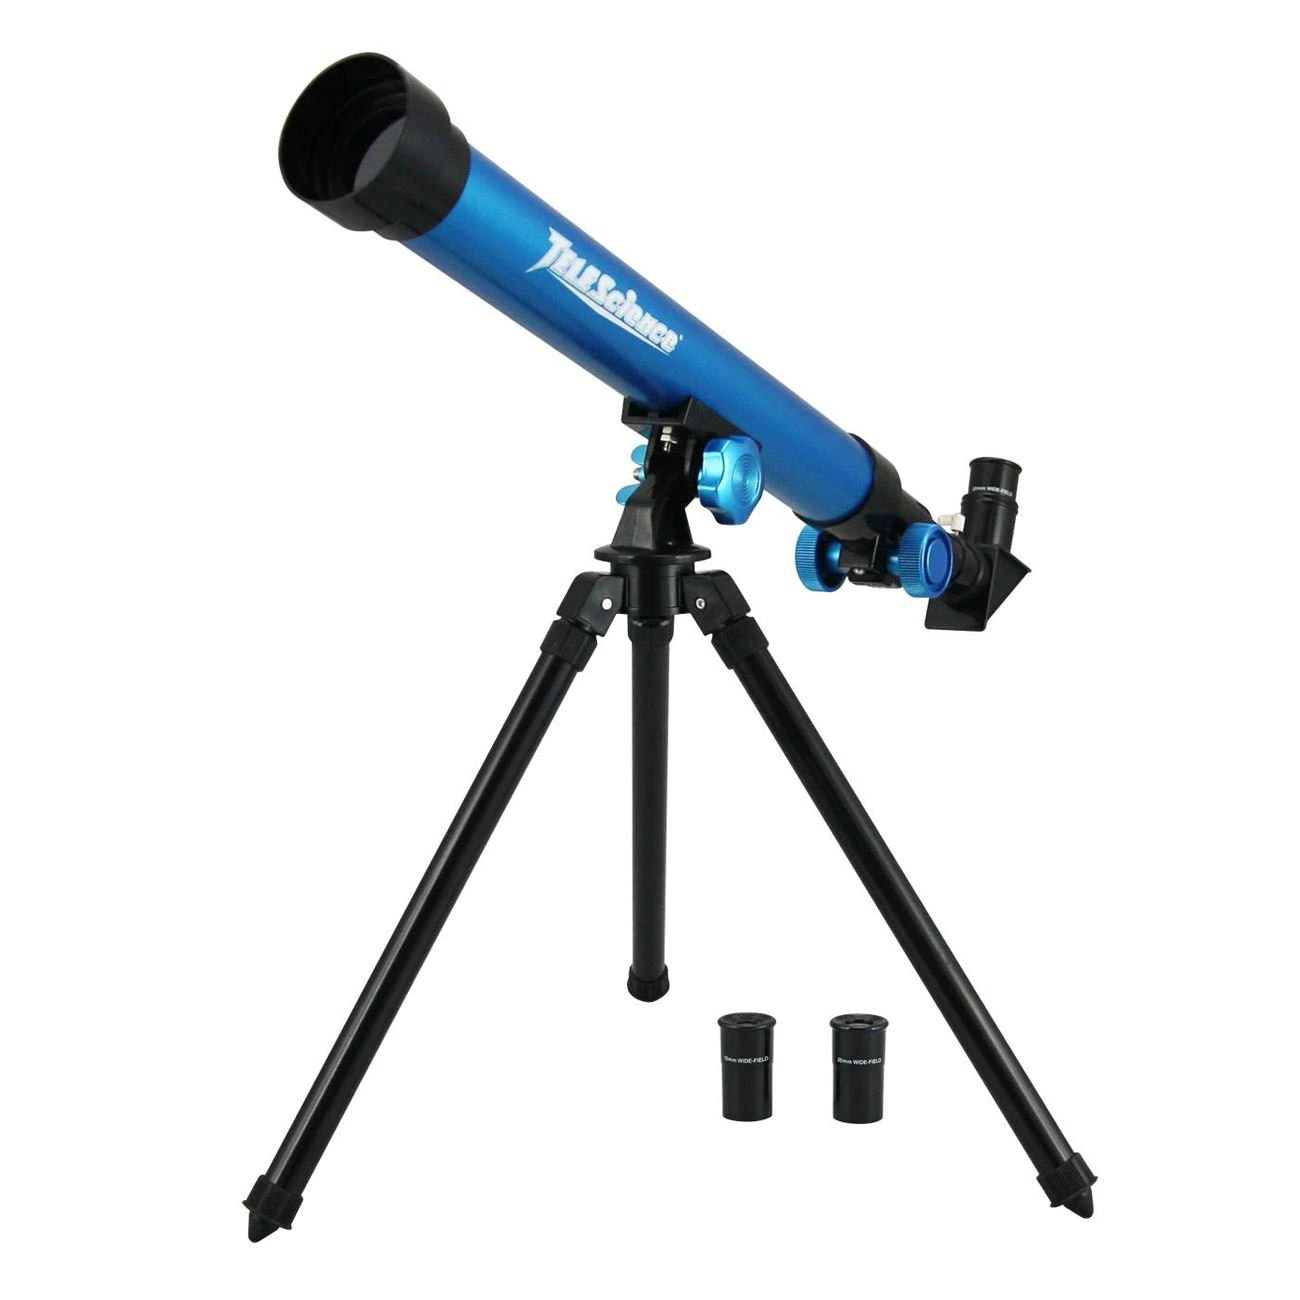 Telescop albastru pentru copii, cu aplicatie de mobil, Lioness, 64 x 8 x 20 cm [3]